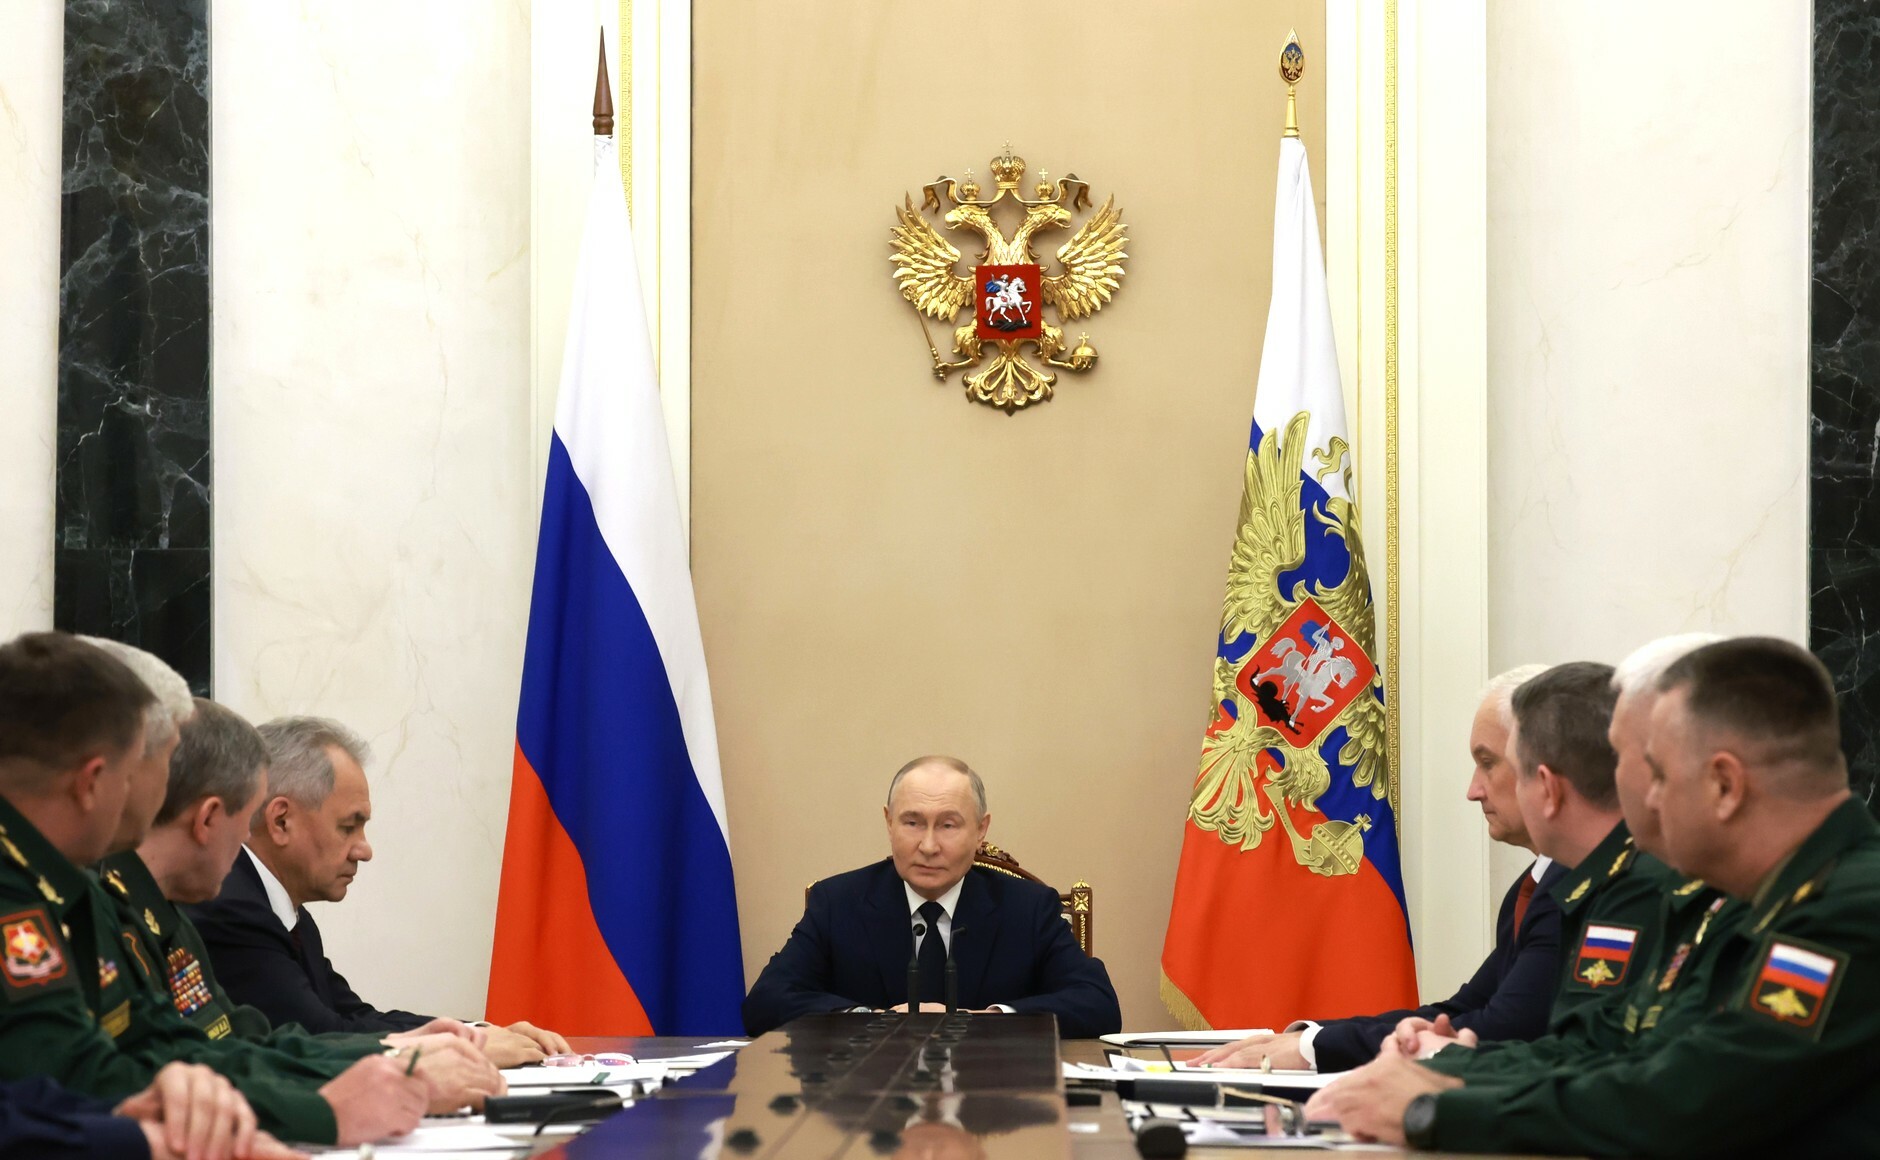 Путин: Никаких изменений в структуре Генерального штаба ВС России нет и не планируется